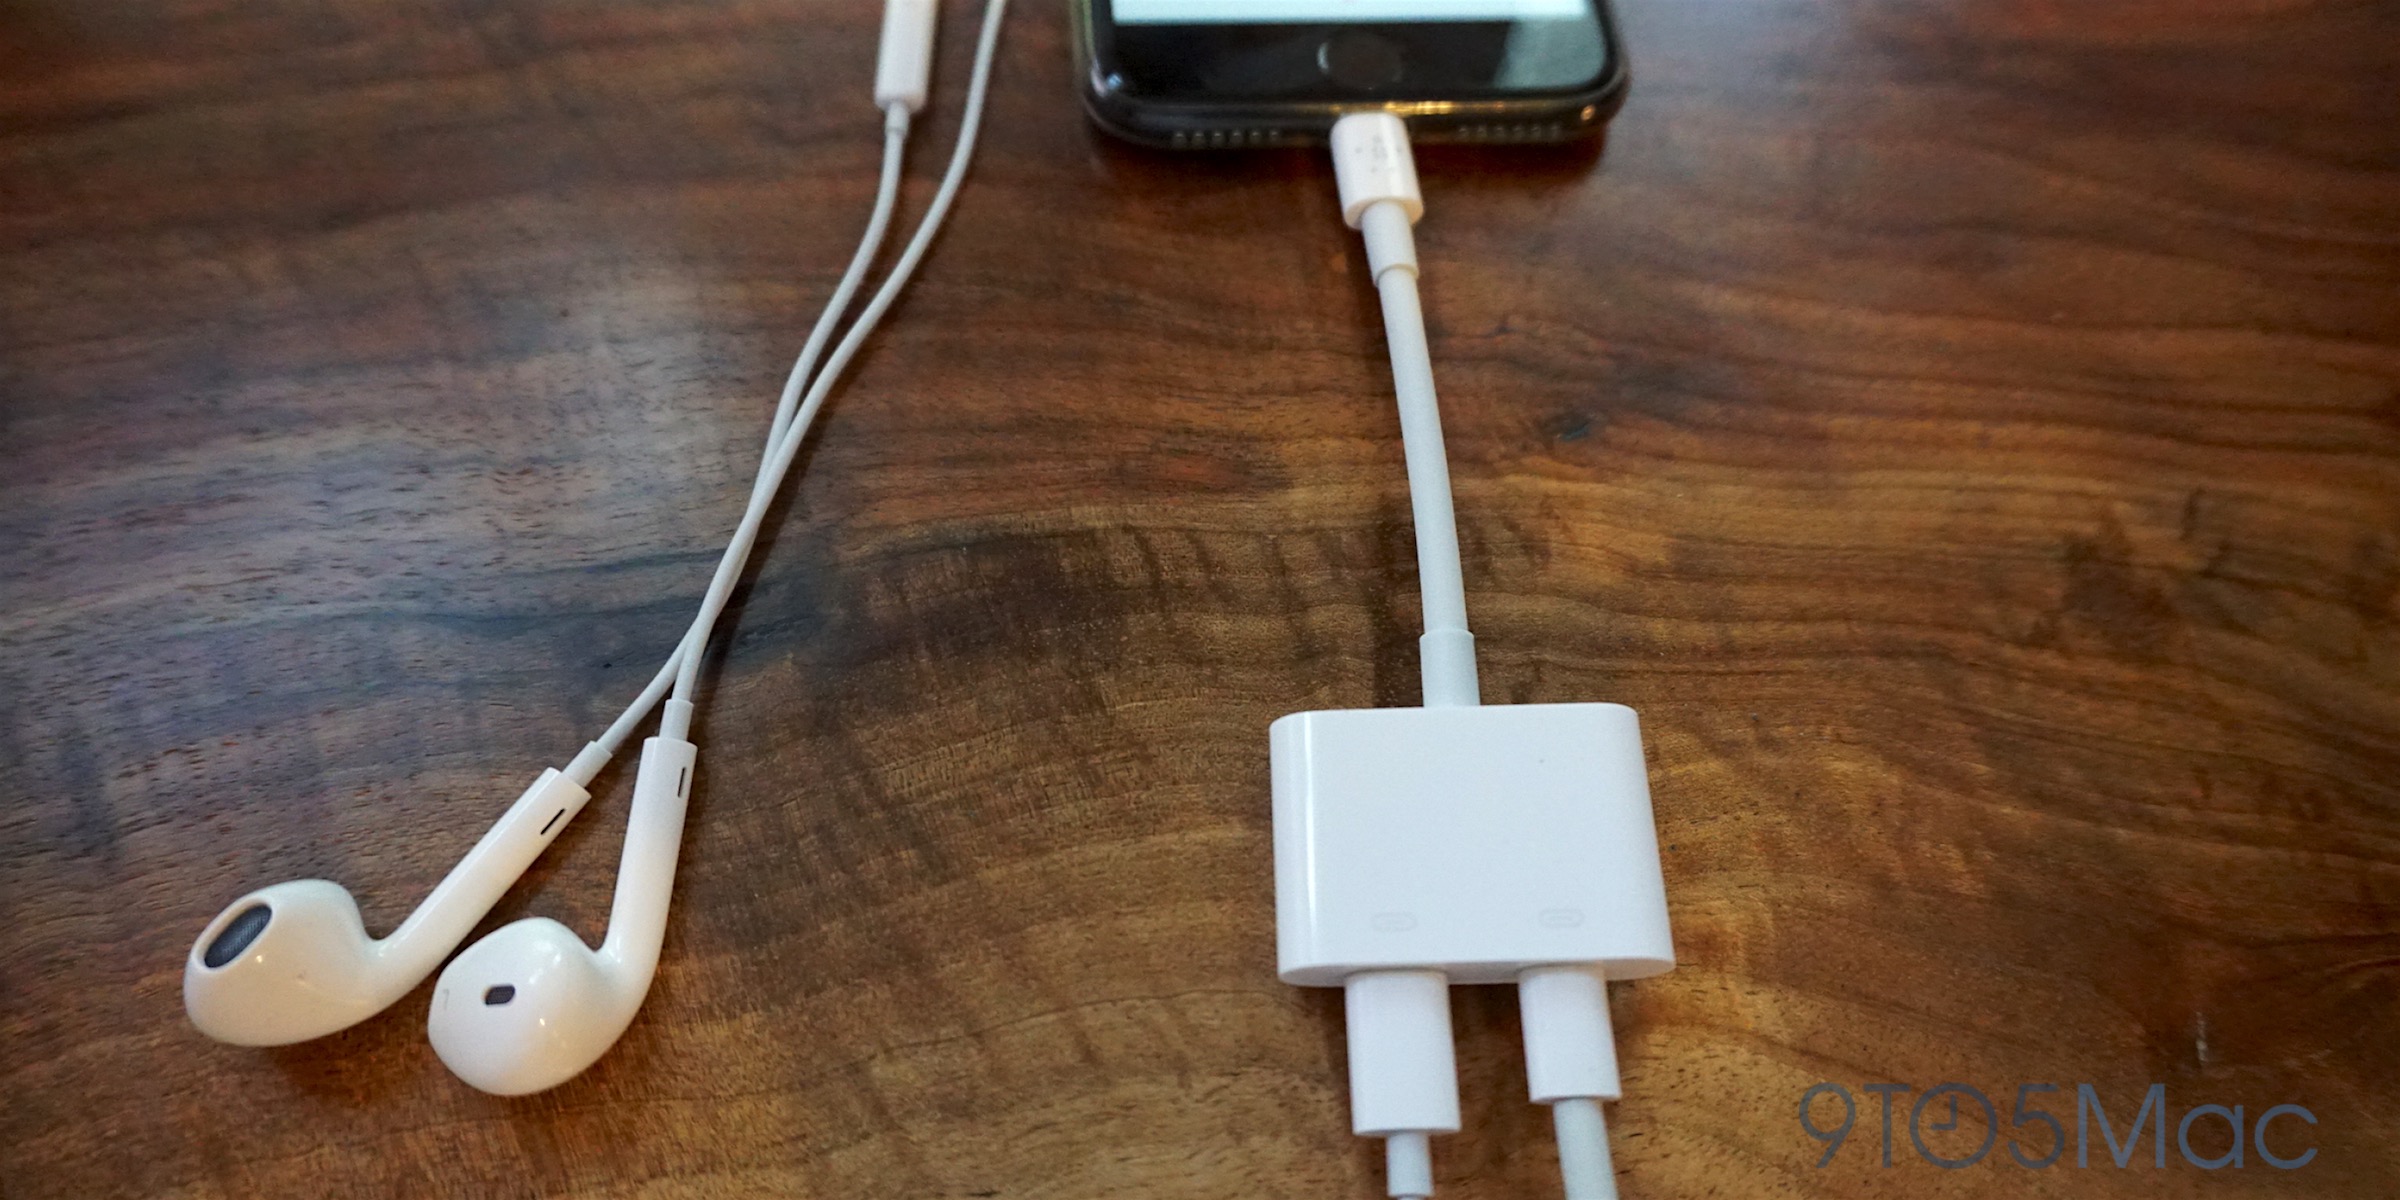 belkin wireless adapter for mac